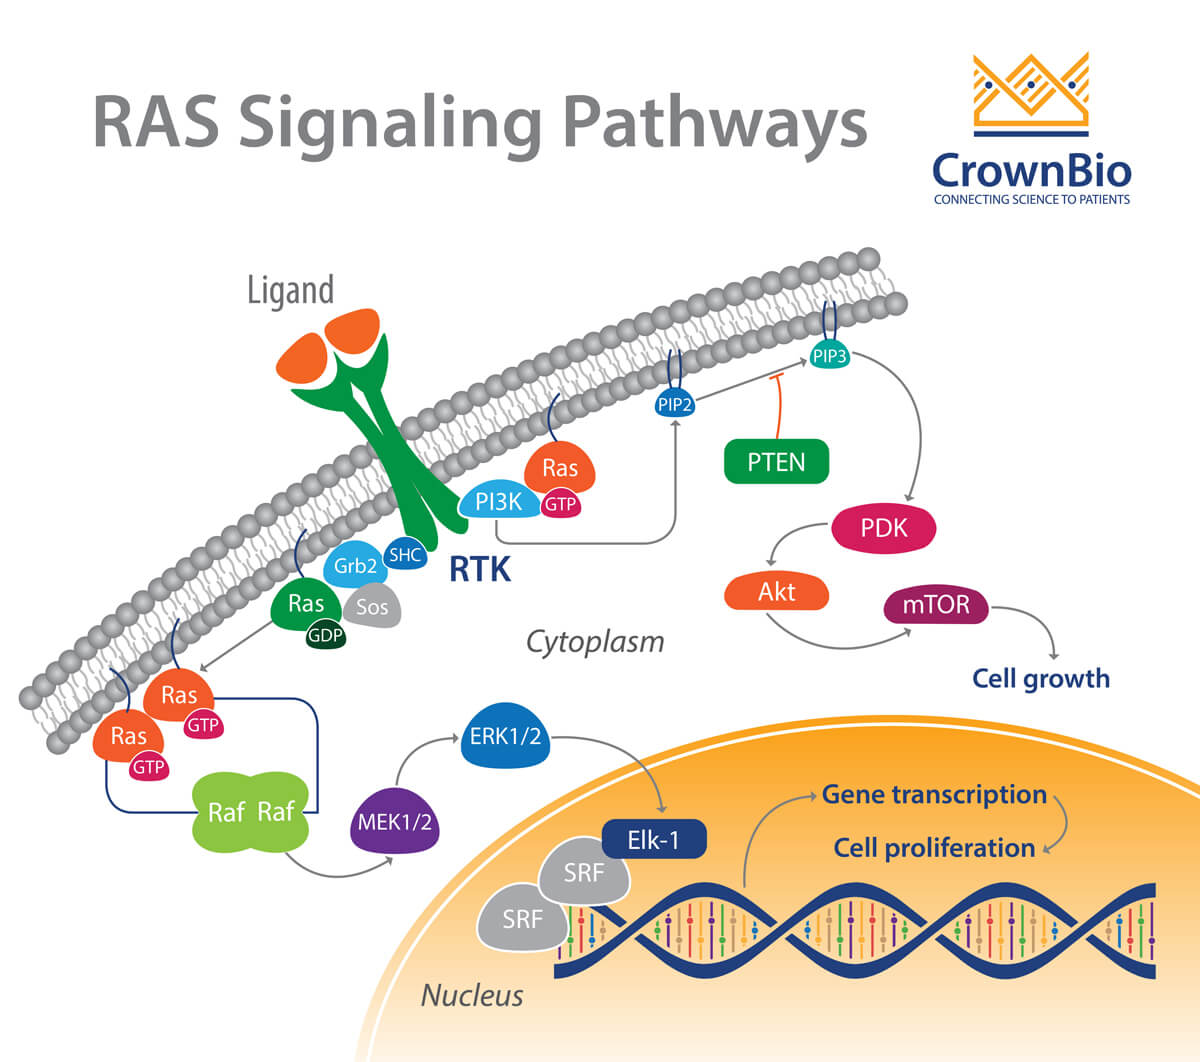 RAS Signaling Pathways